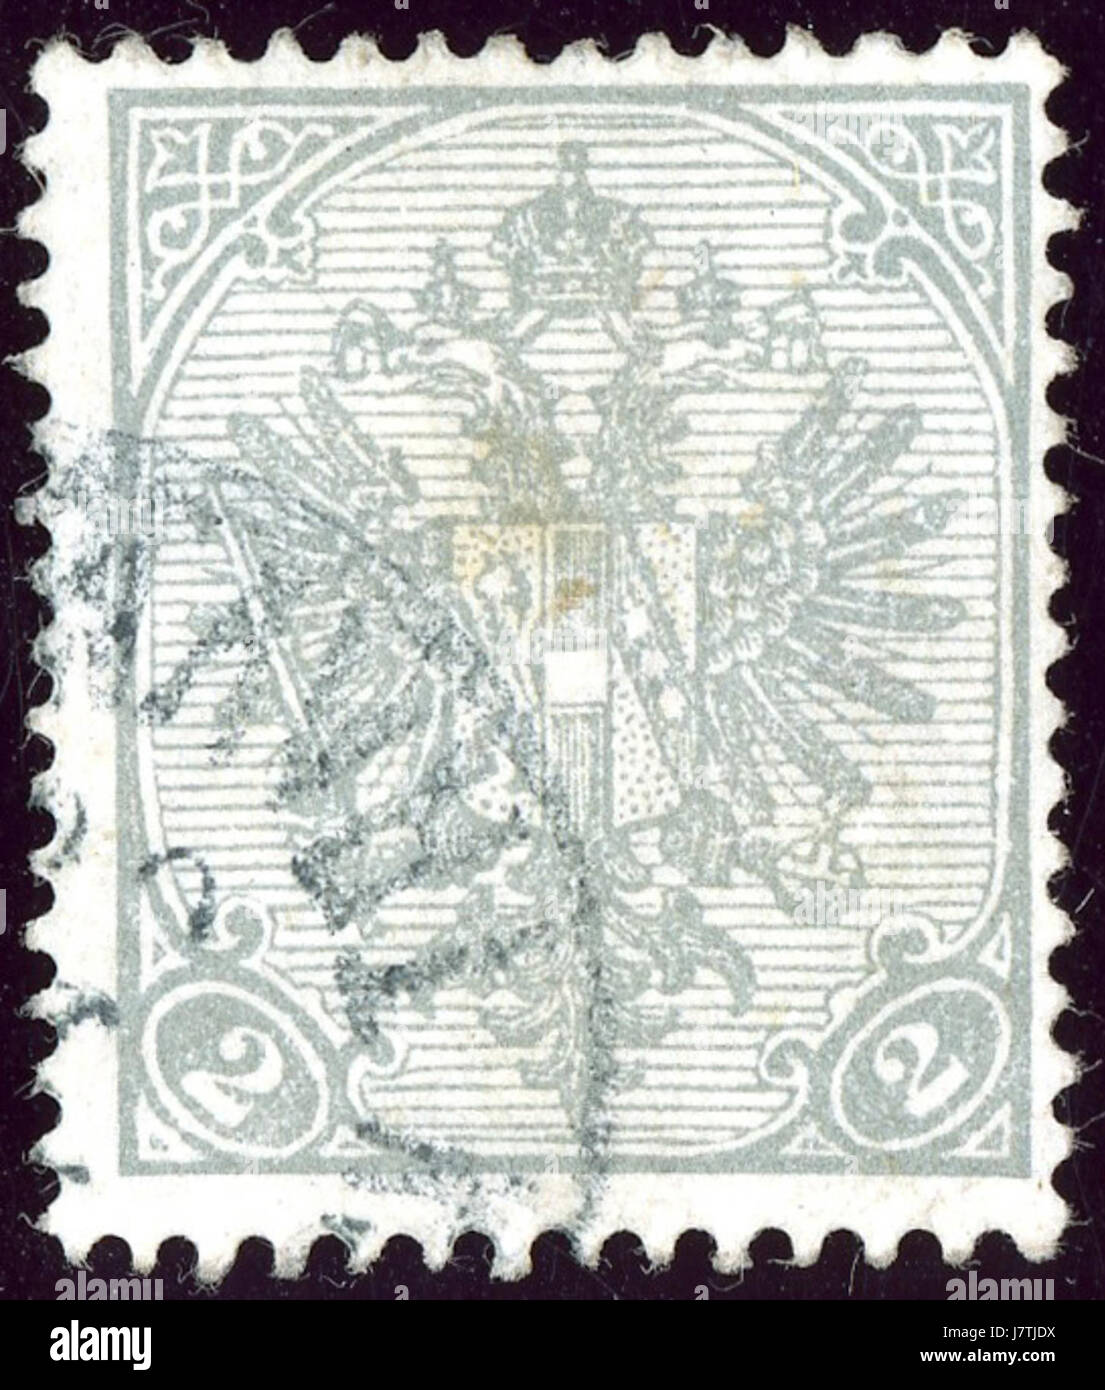 1900 b c